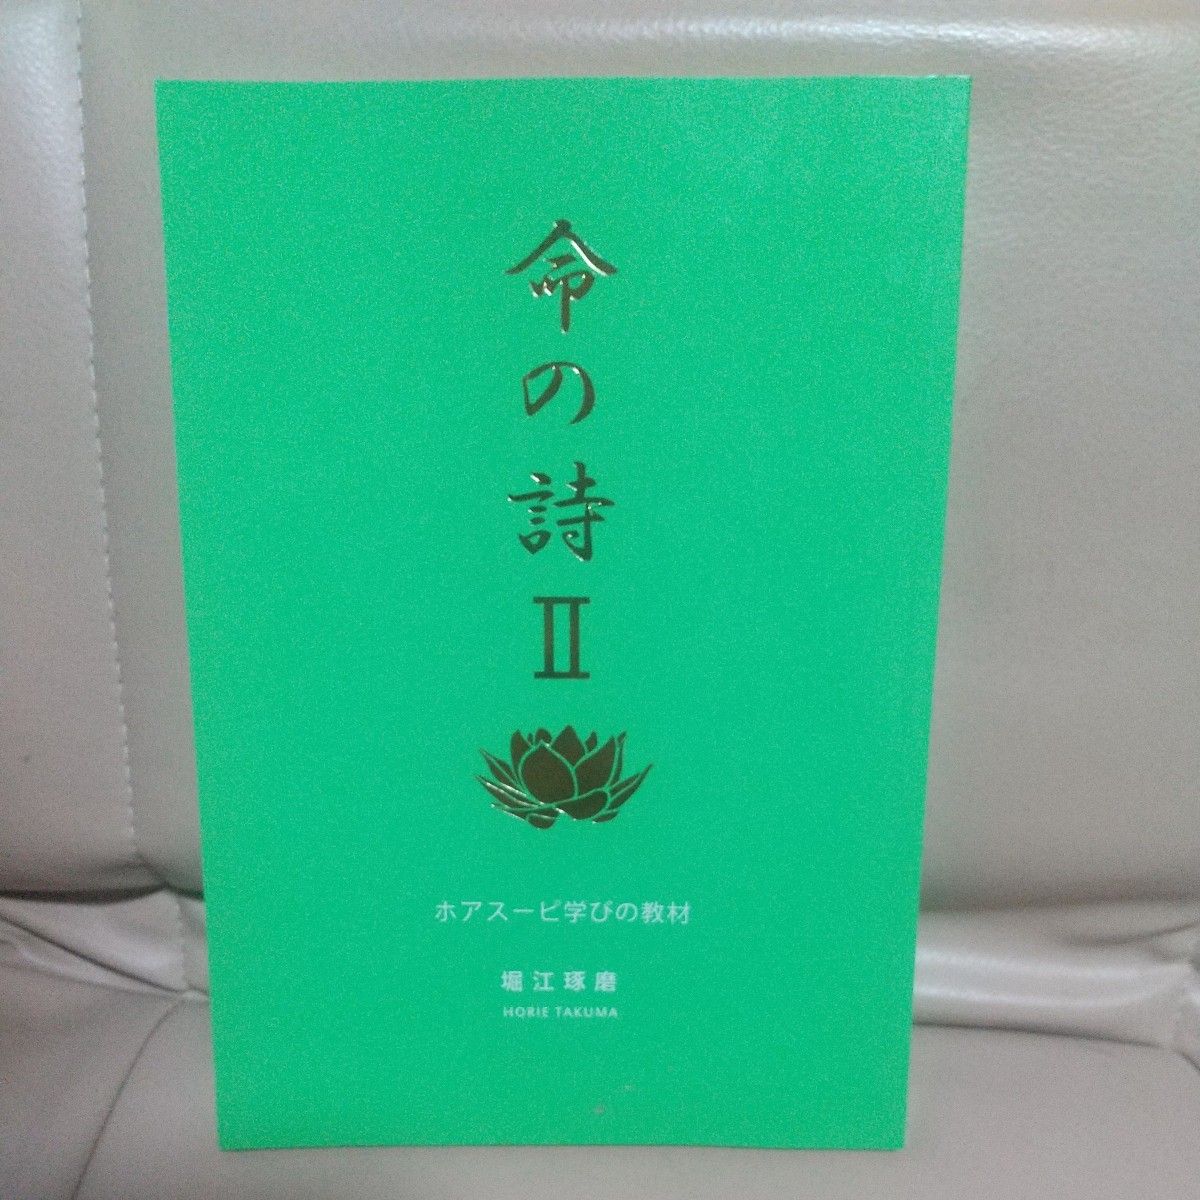 「命の詩Ⅱ」ホアスーピ学びの教材、堀江琢磨、サイババ